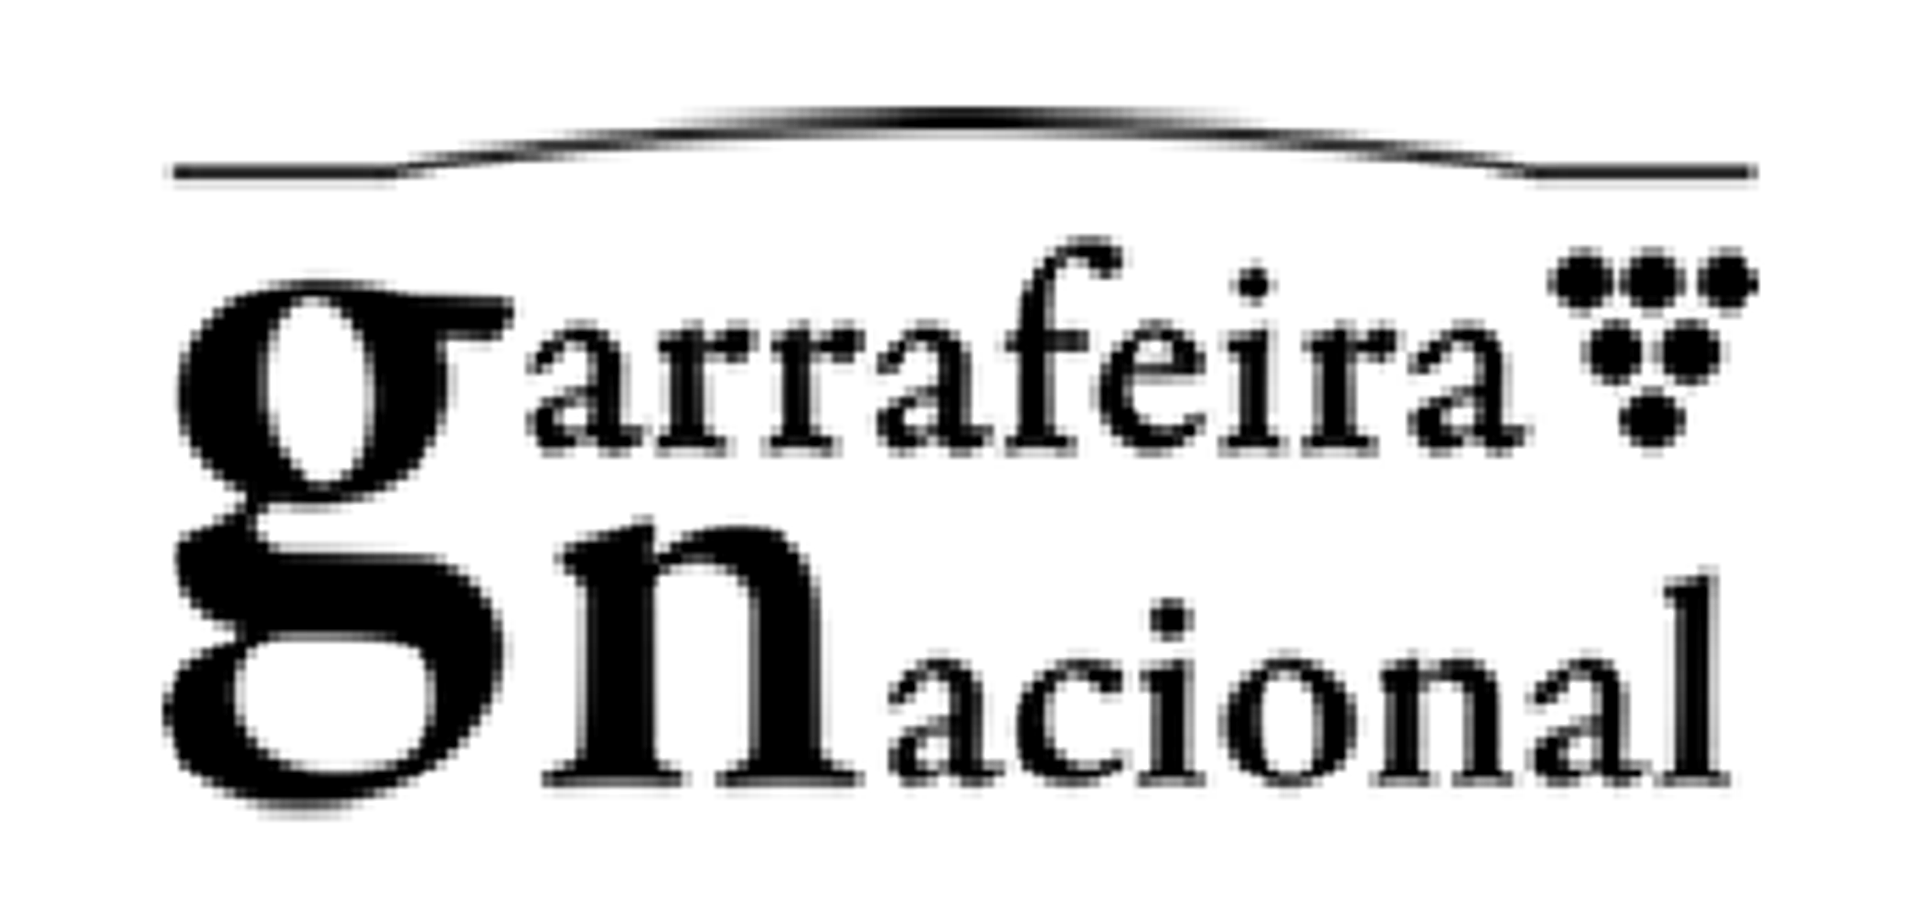 GARRAFEIRA NACIONAL logo de folhetos